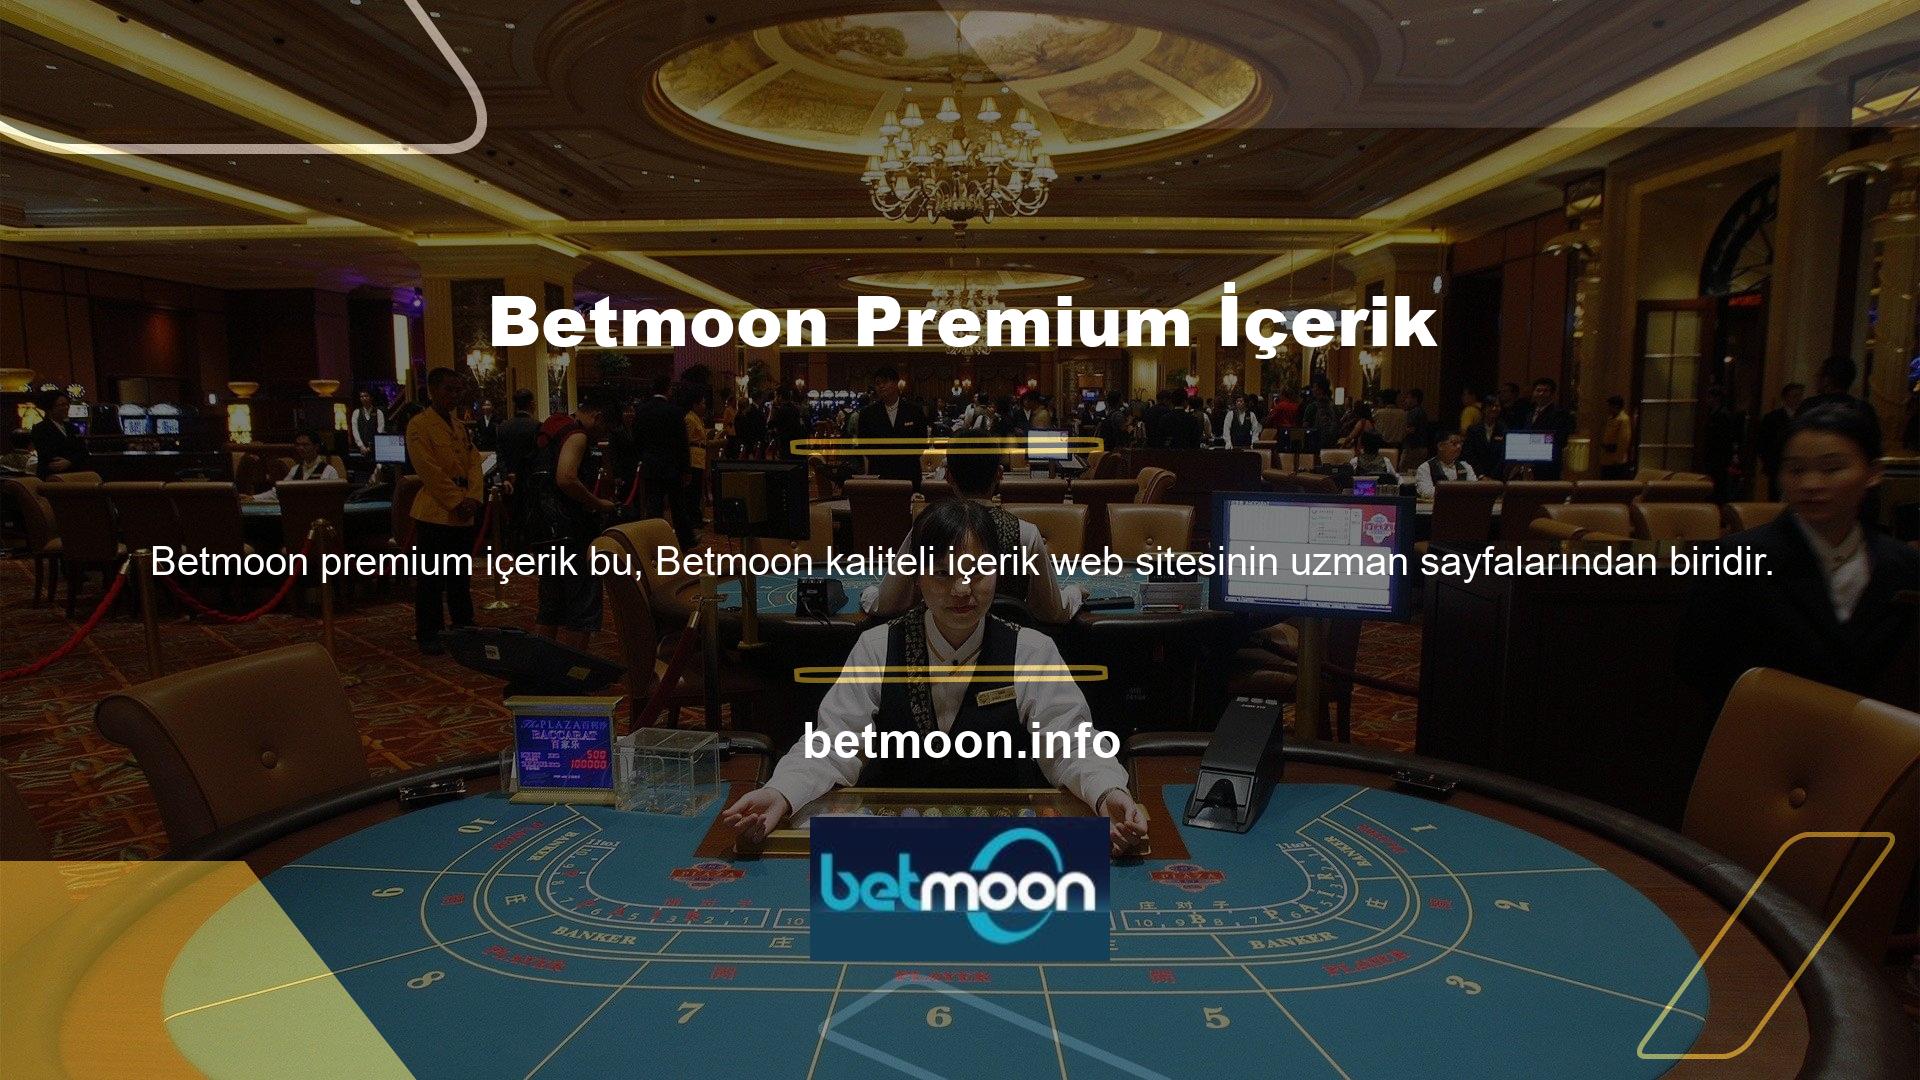 Betmoon web sitesi kullanıcılar arasında popüler olup, üyeleri ve ziyaretçileri için geniş erişim haklarına sahiptir